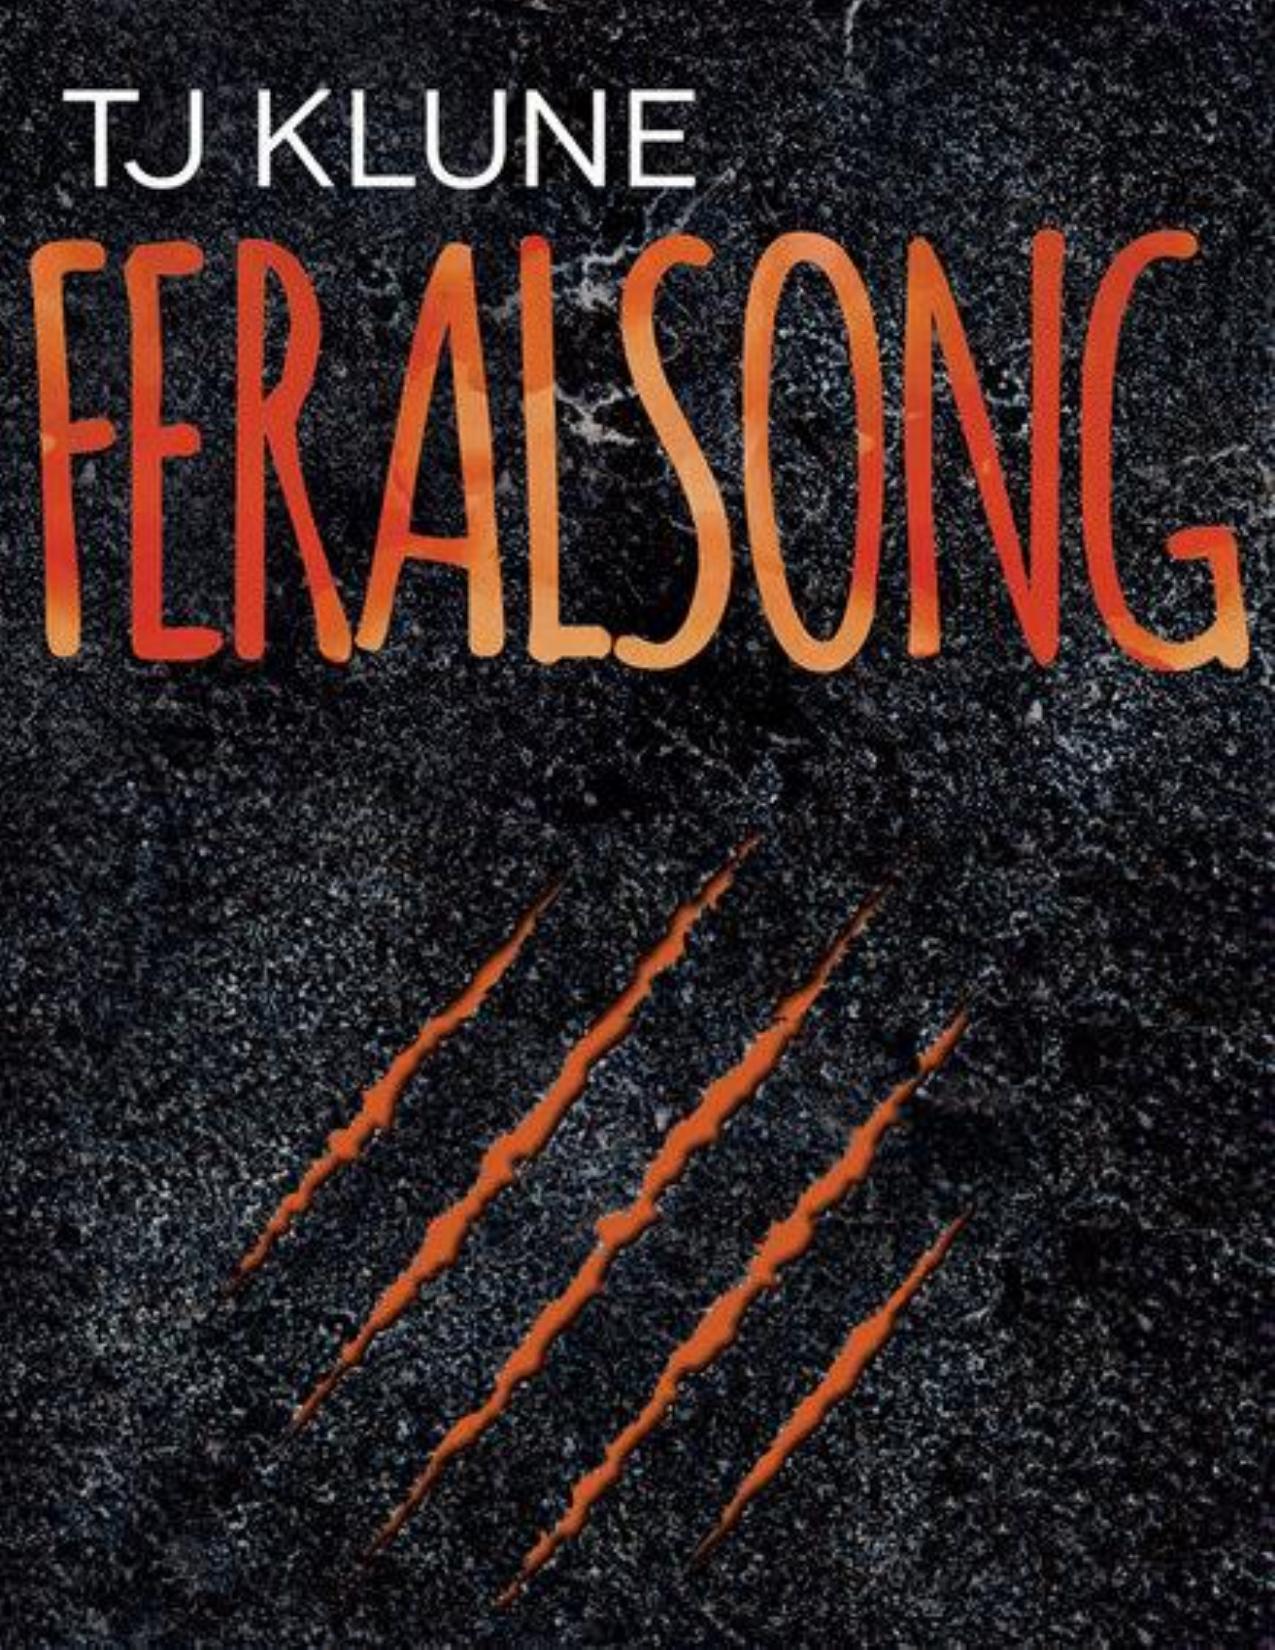 Feralsong (BR)